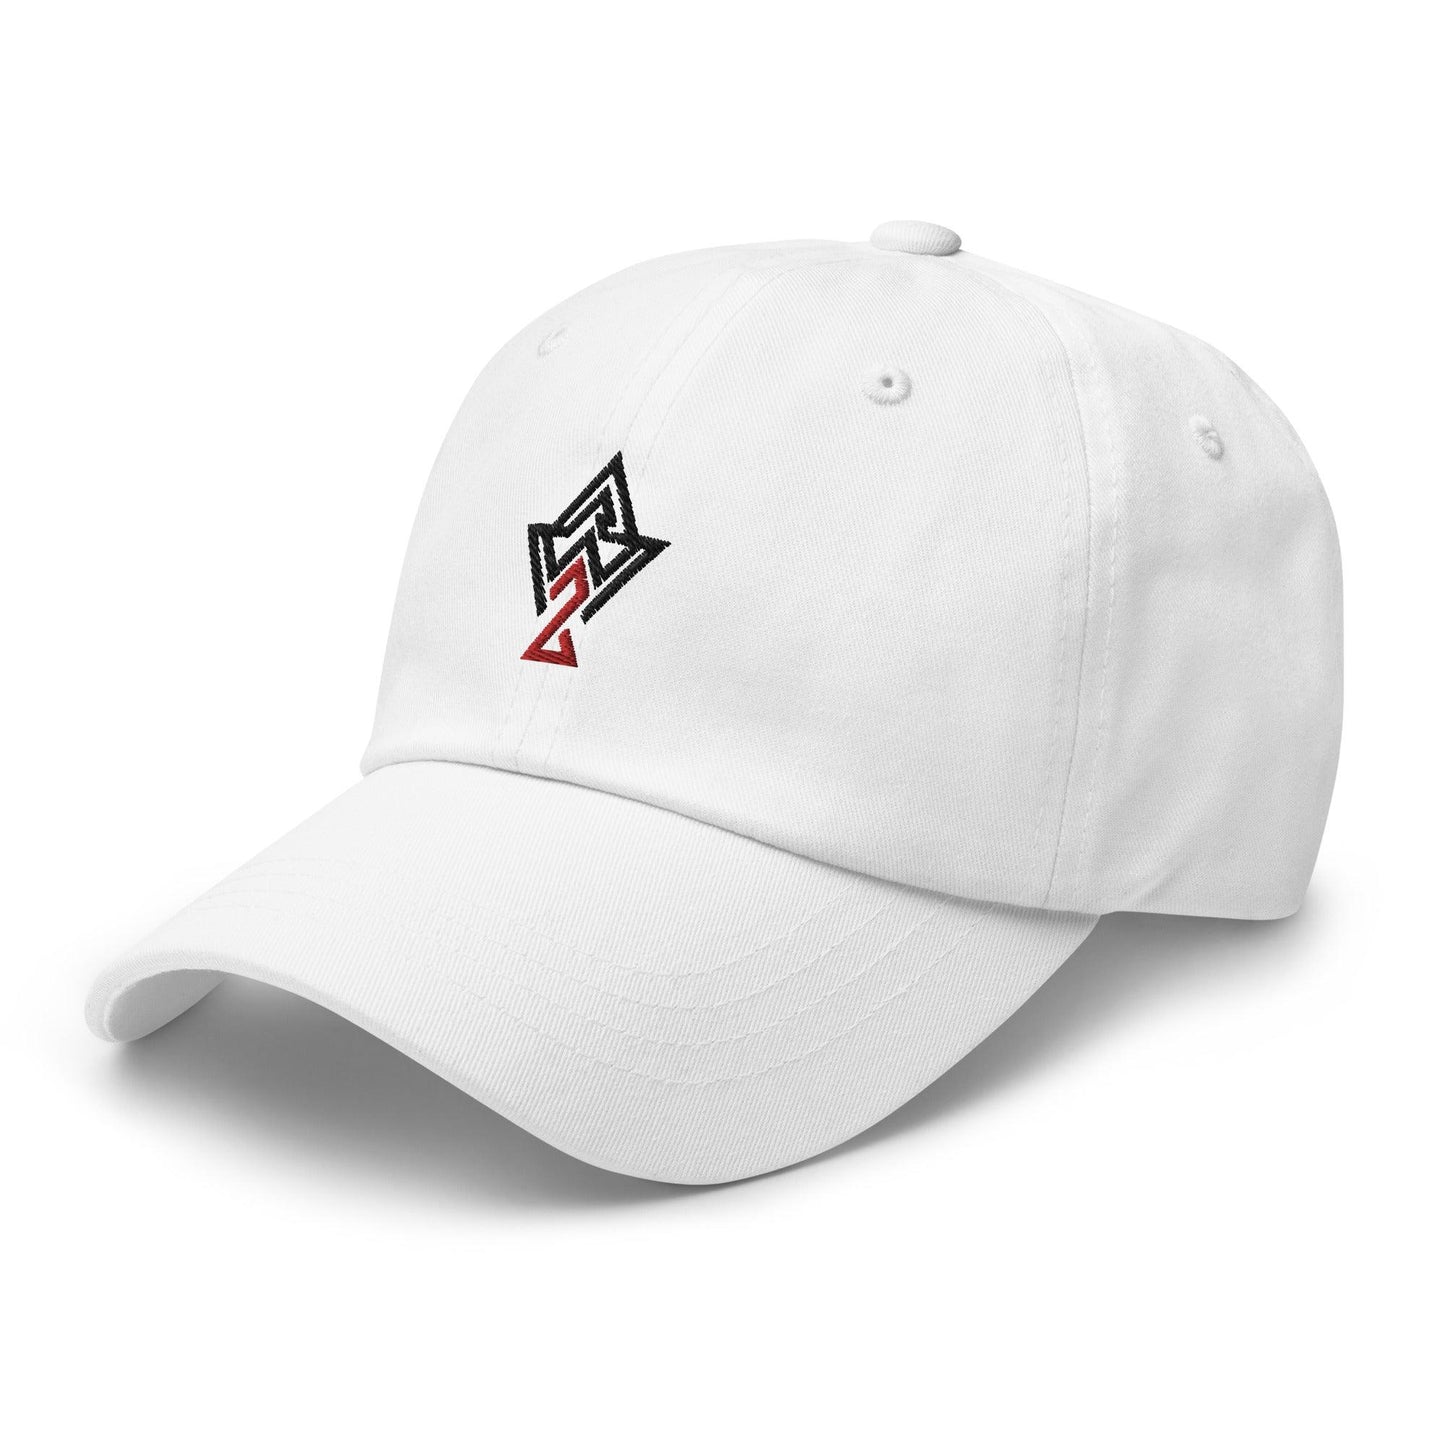 Aubrey Ward Jr "Elite" hat - Fan Arch